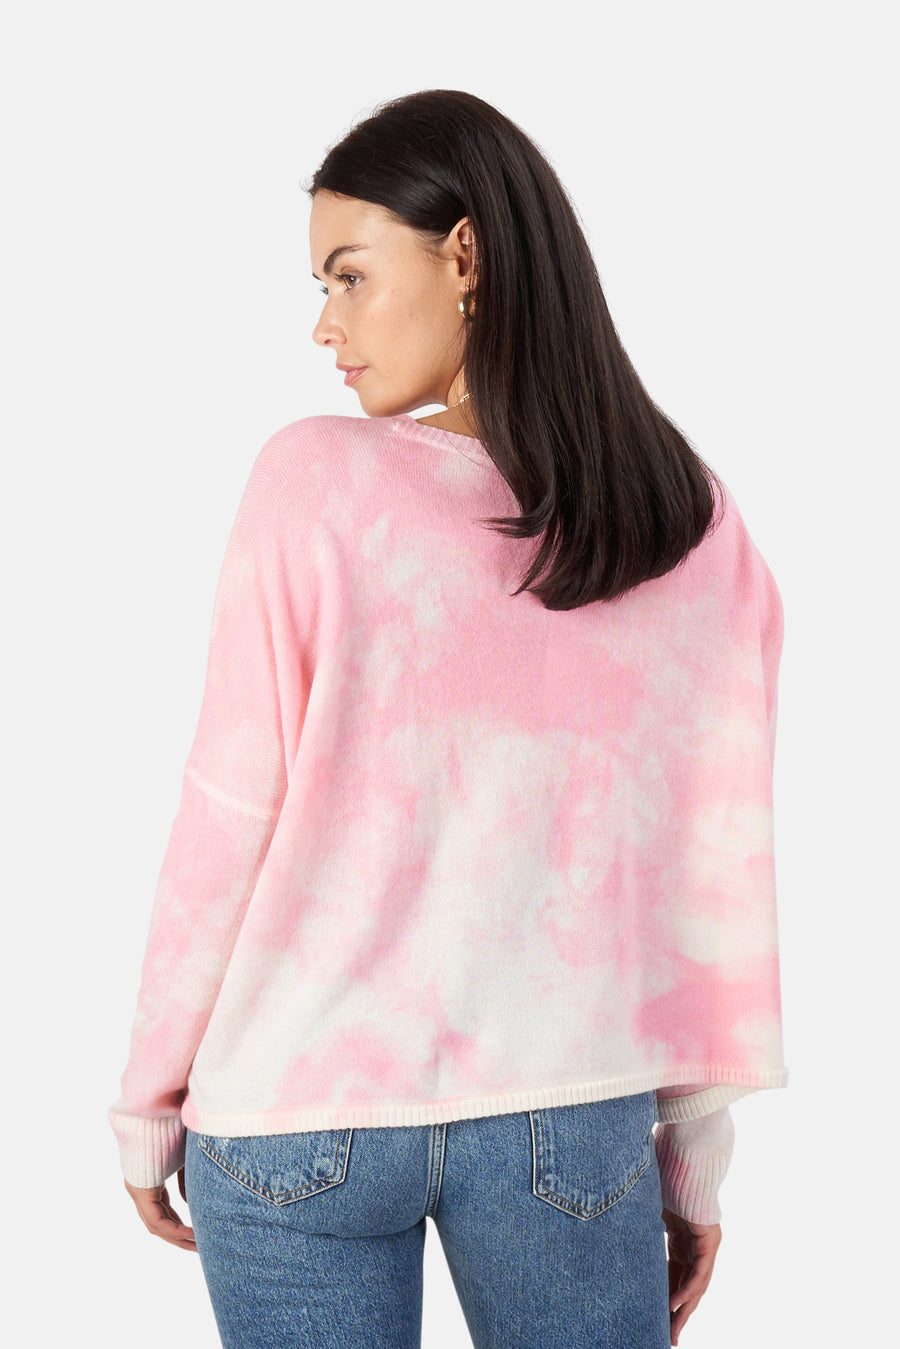 Minnie Rose Pink Sand Bleach Print Boyfriend Crop Sweater - blueandcream